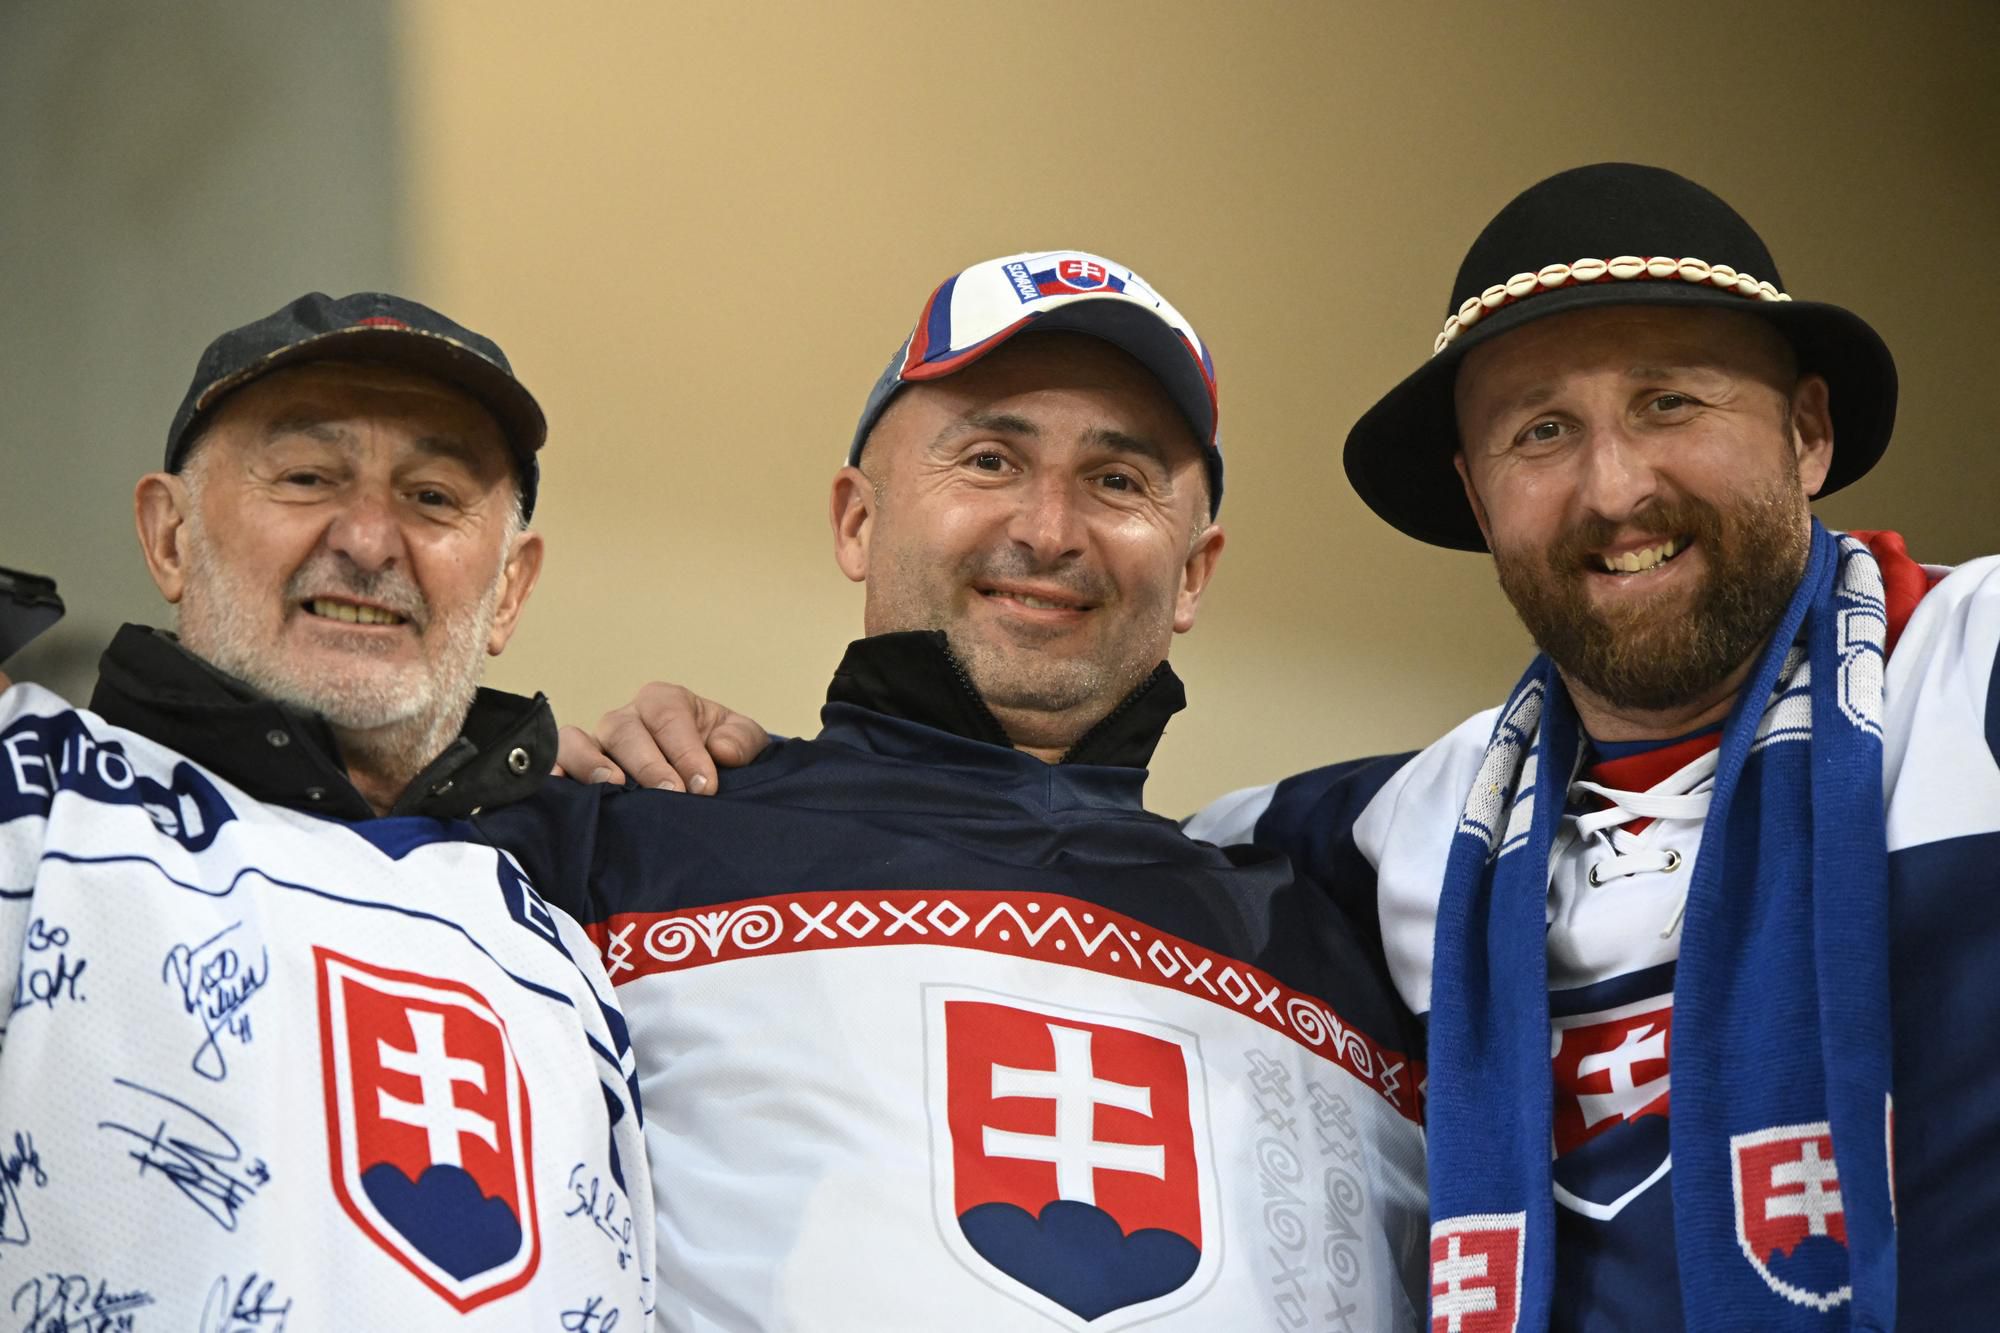 Fanúšikovia Slovenska